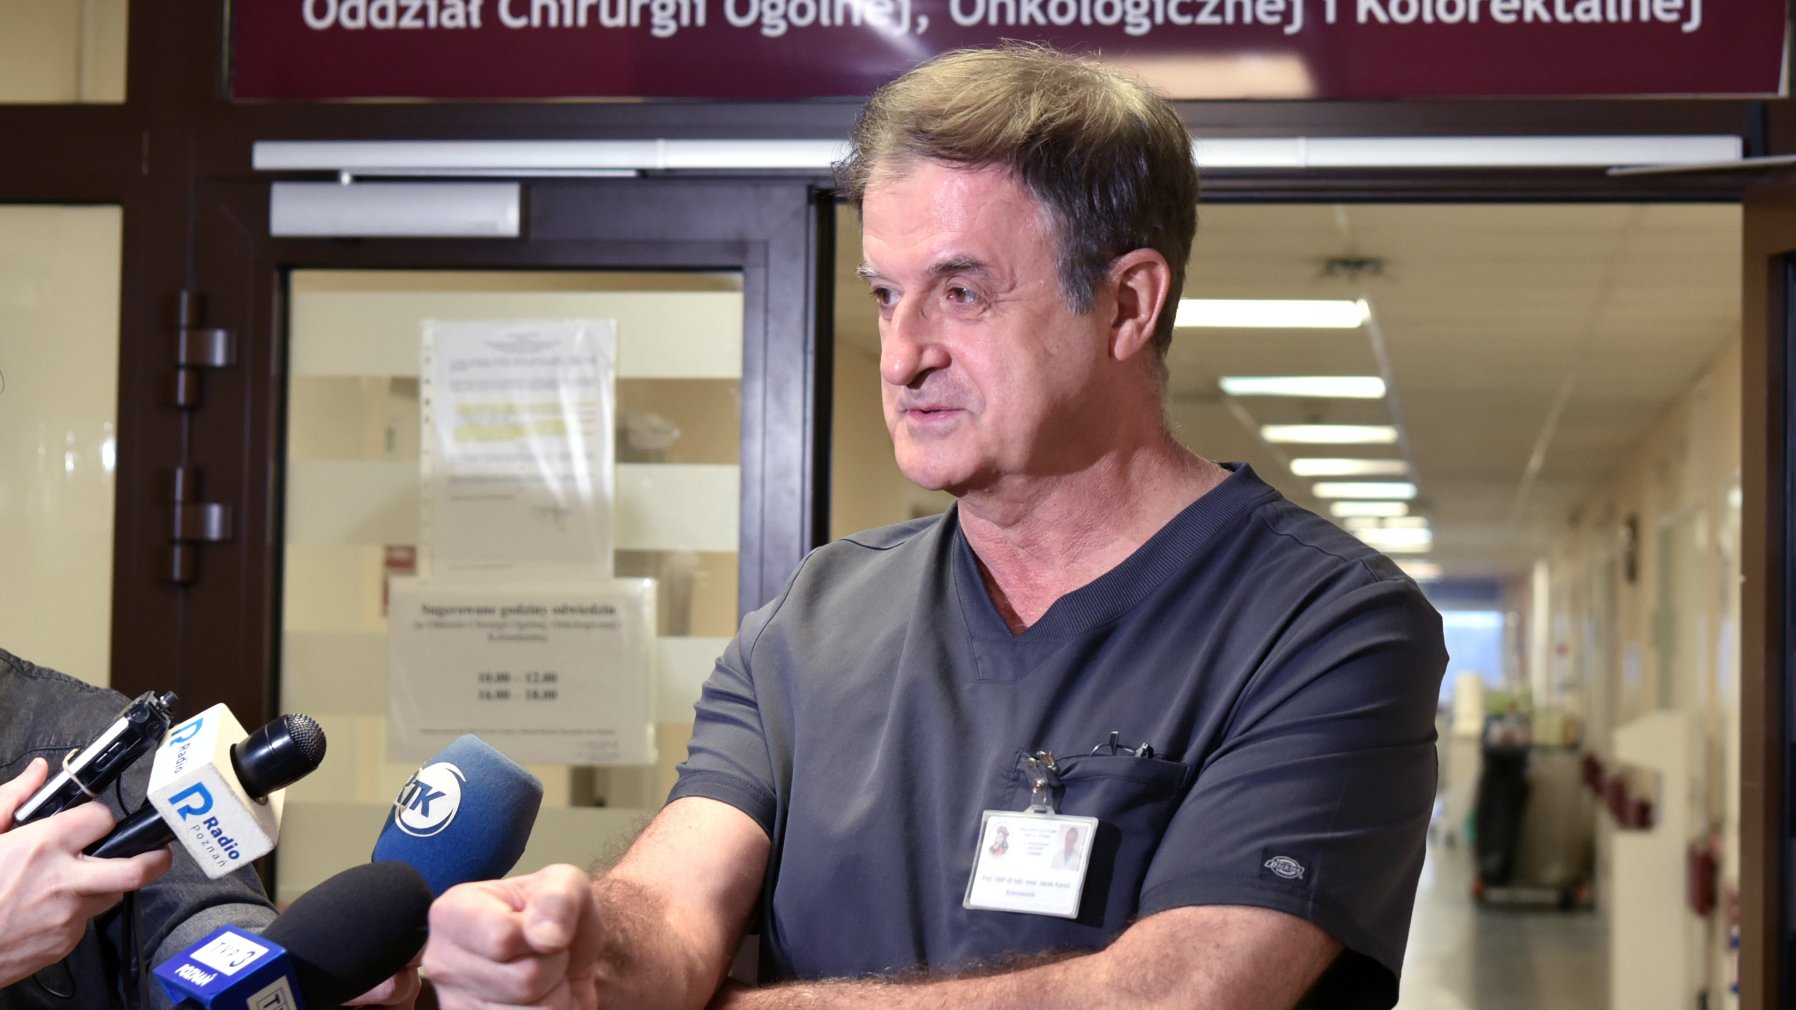 Na zdjęciu chirurg mówiący coś do mikrofonu, stojący w korytarzu szpitala